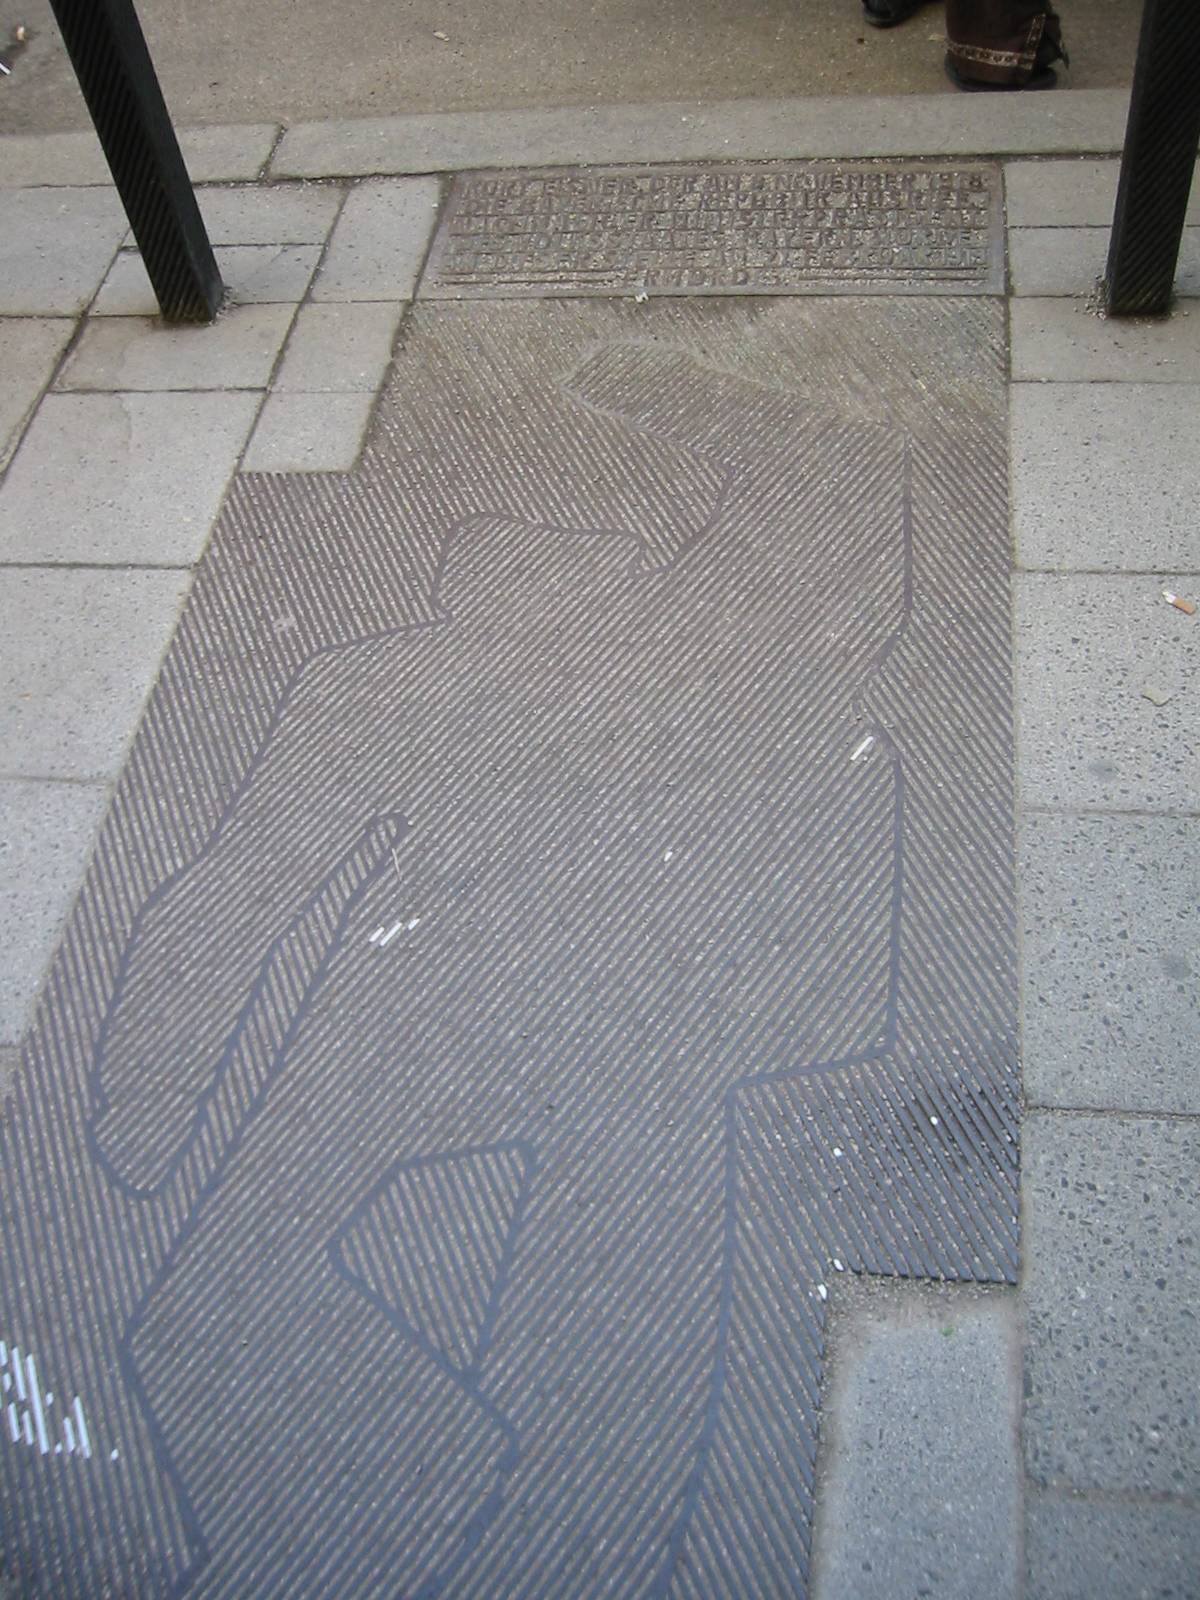 A monument to Kurt Eisner on a sidewalk in Munich